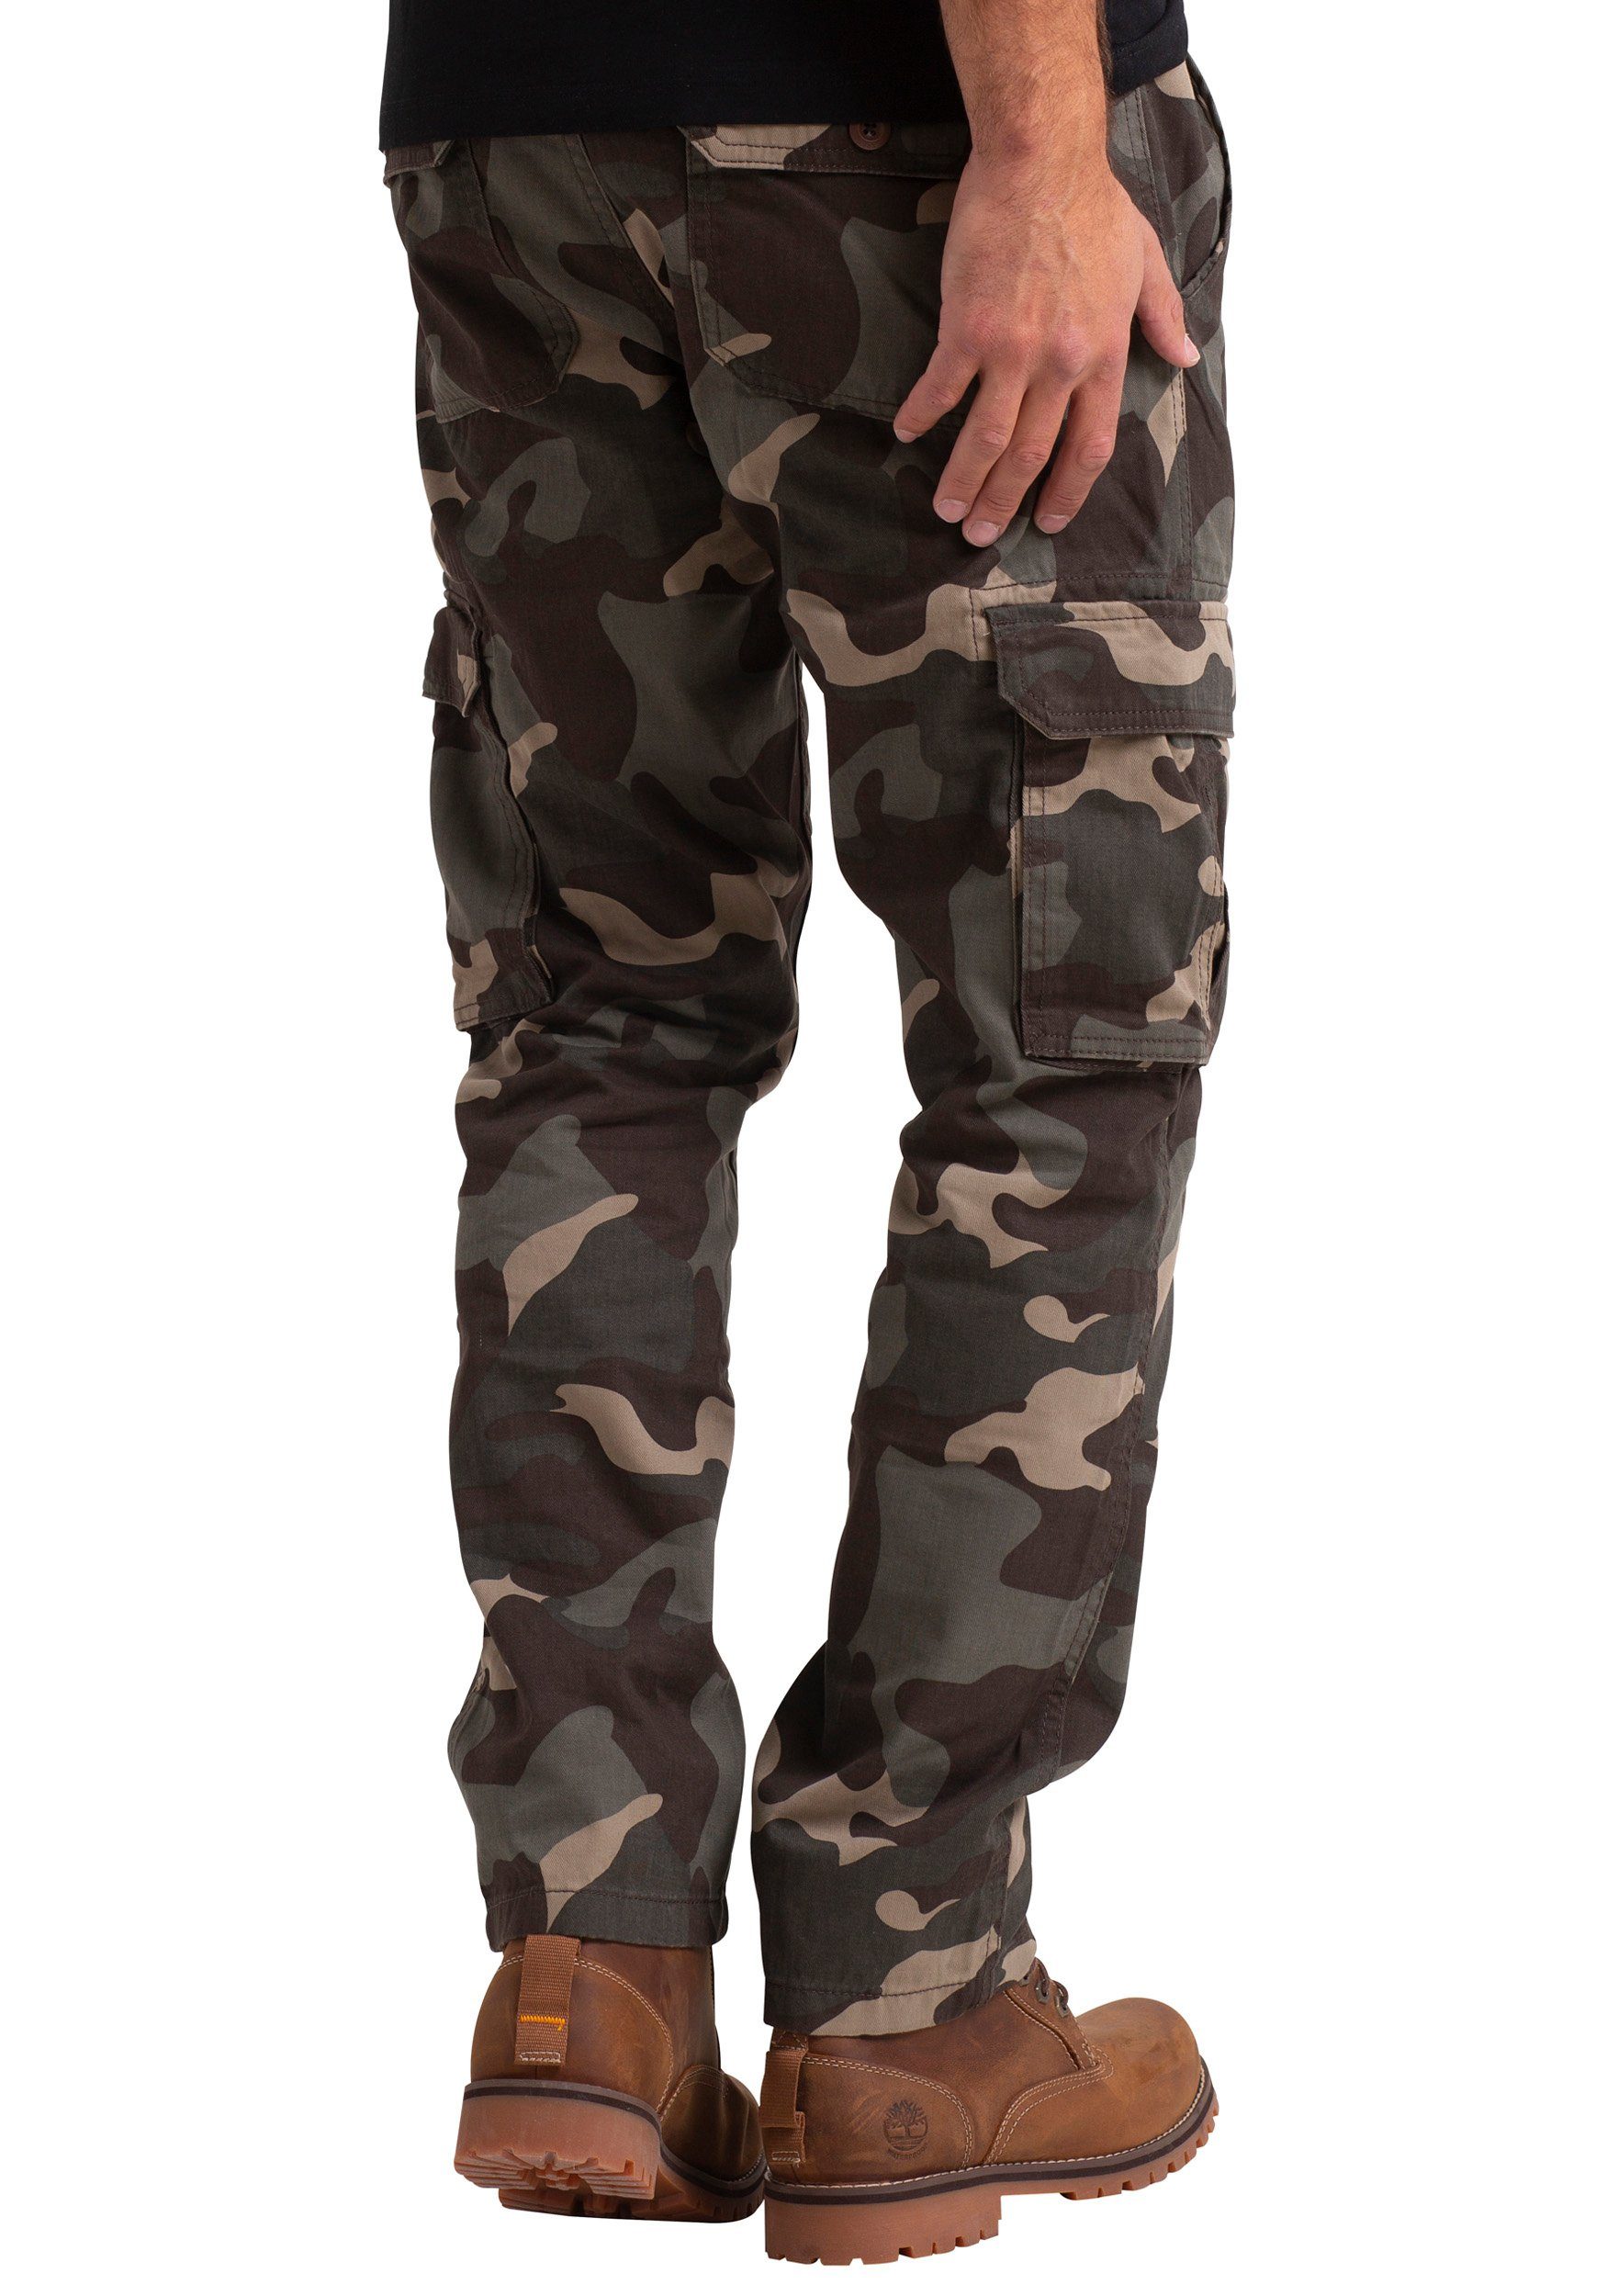 BlauerHafen Cargohose Mens Army Cargo Bein Hose Arbeitskleidung Urwald Camouflage gerades Baumwolle Camo